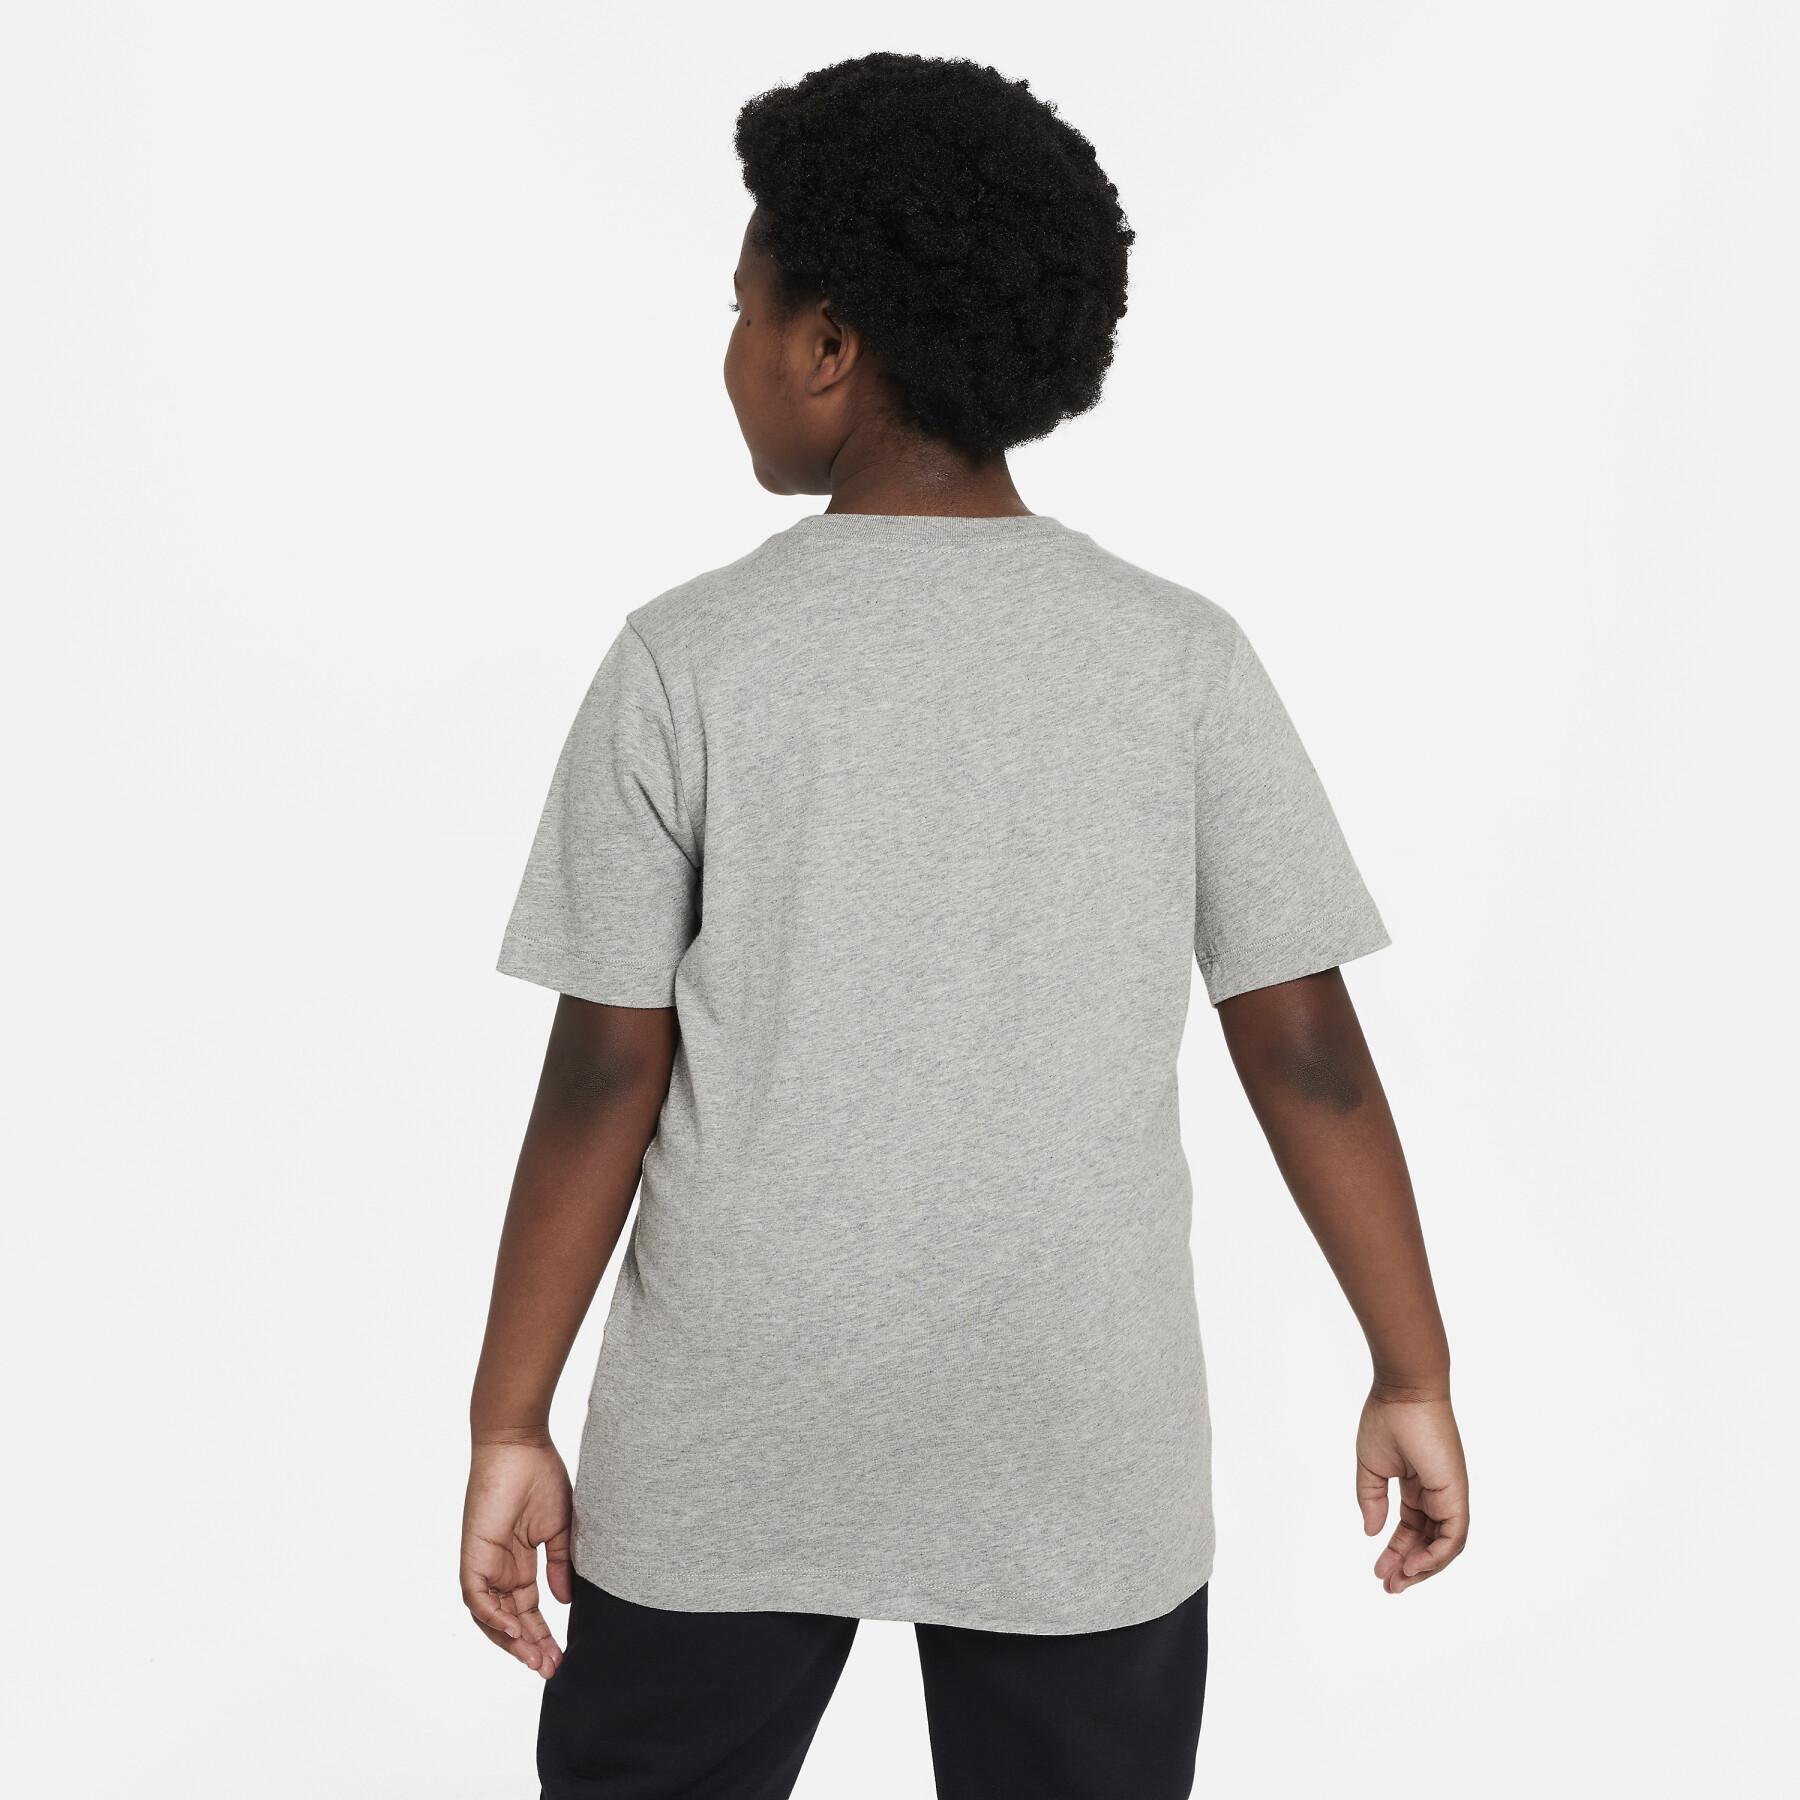 Child's T-shirt Nike Core Brandmark 2